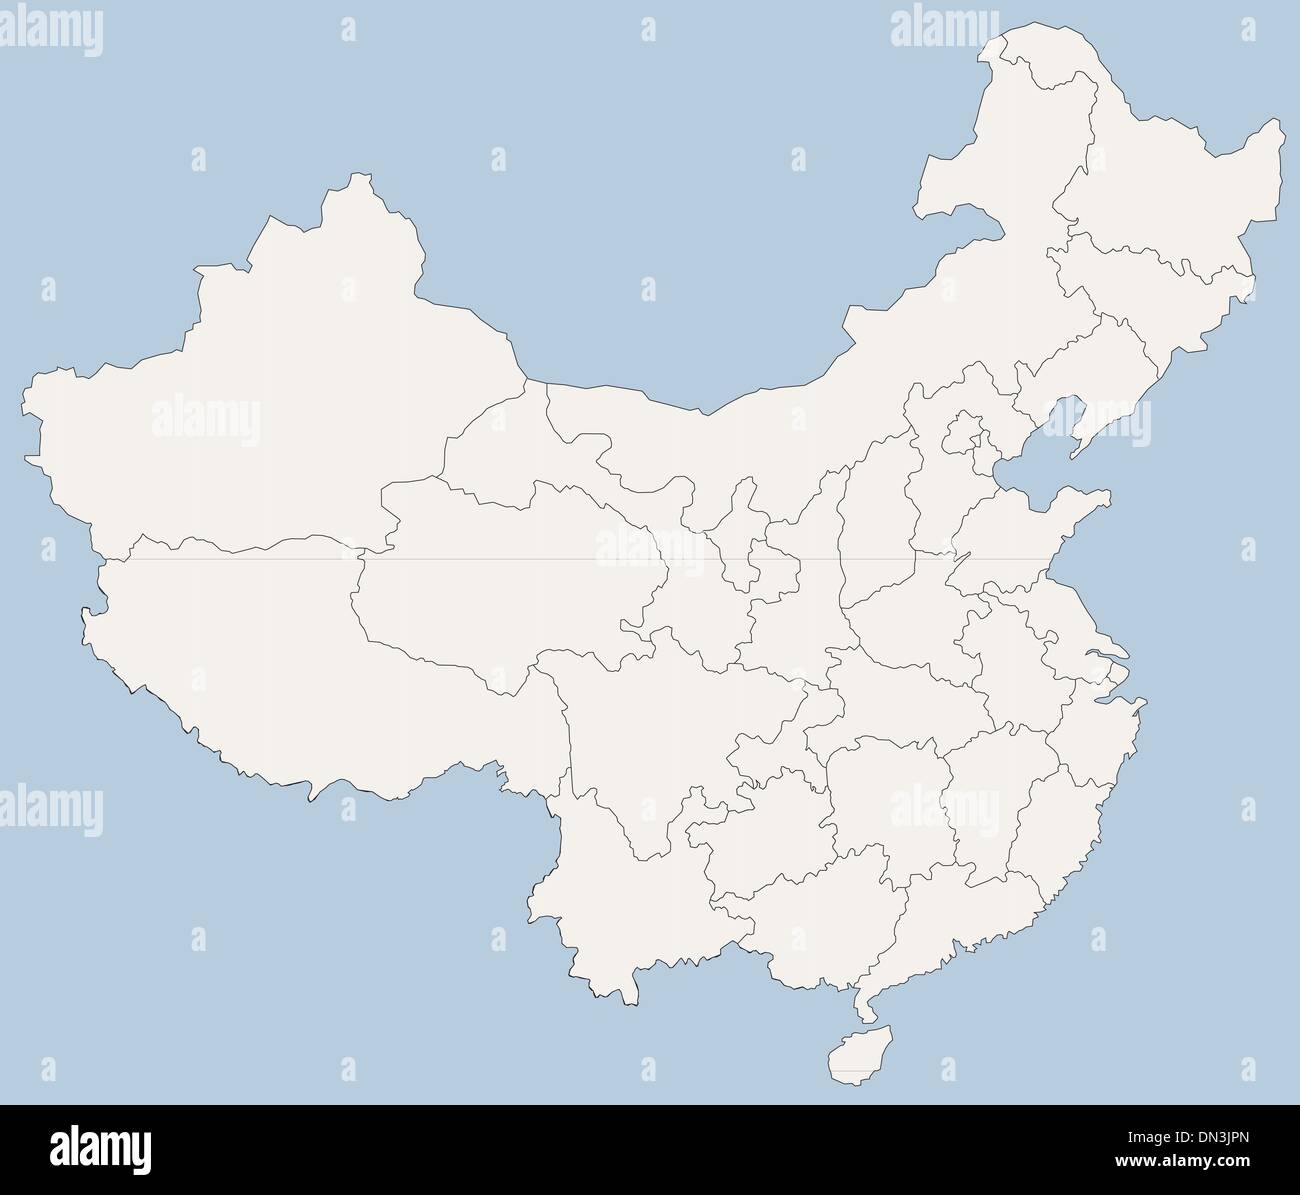 Vektorkarte der Volksrepublik China (VRC) Stock Vektor